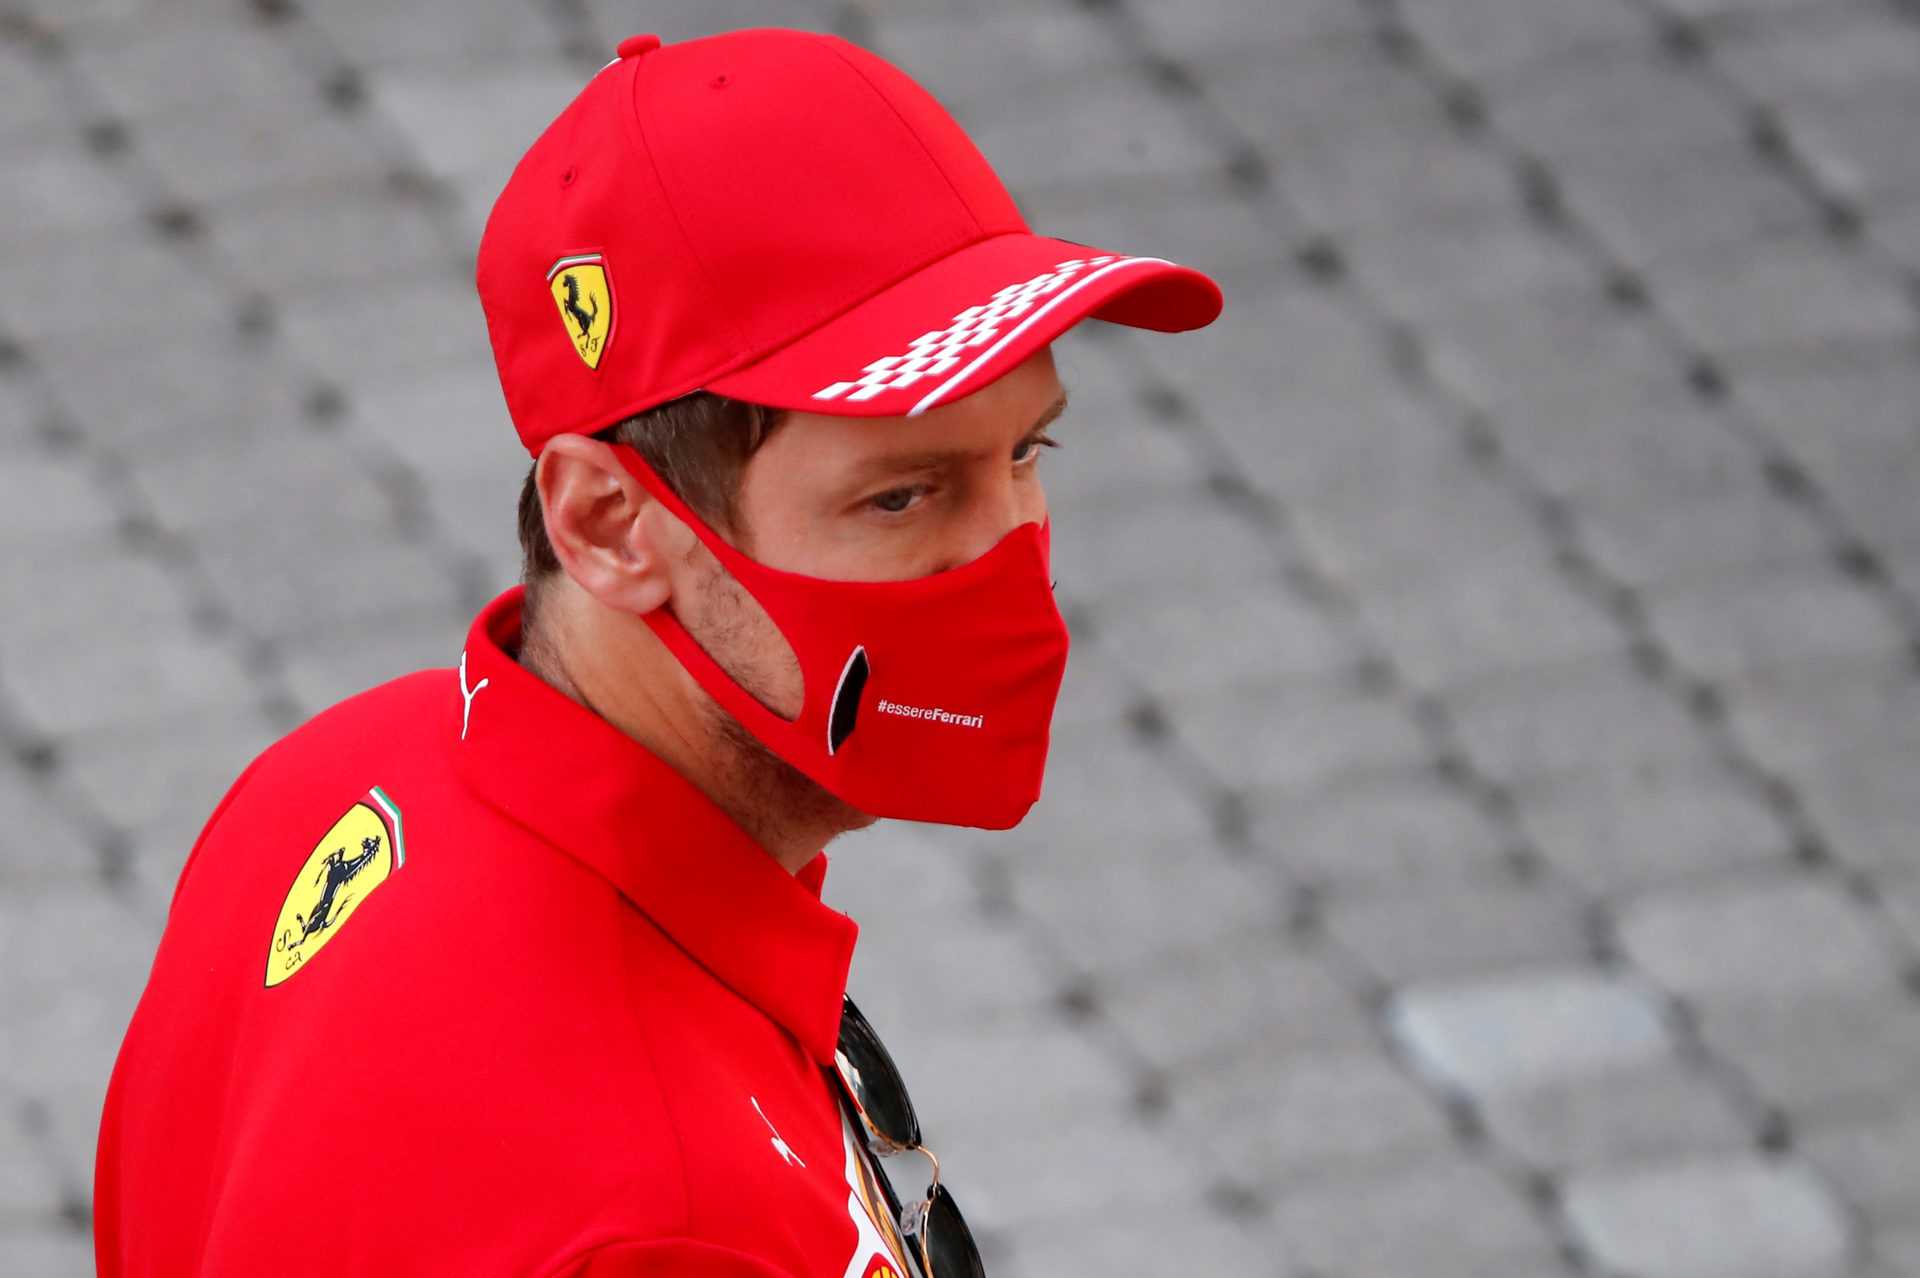 "Je n'aimerais pas dire ce que je pense" - Sebastian Vettel réagit à Stefano Domenicali en devenant PDG de la F1